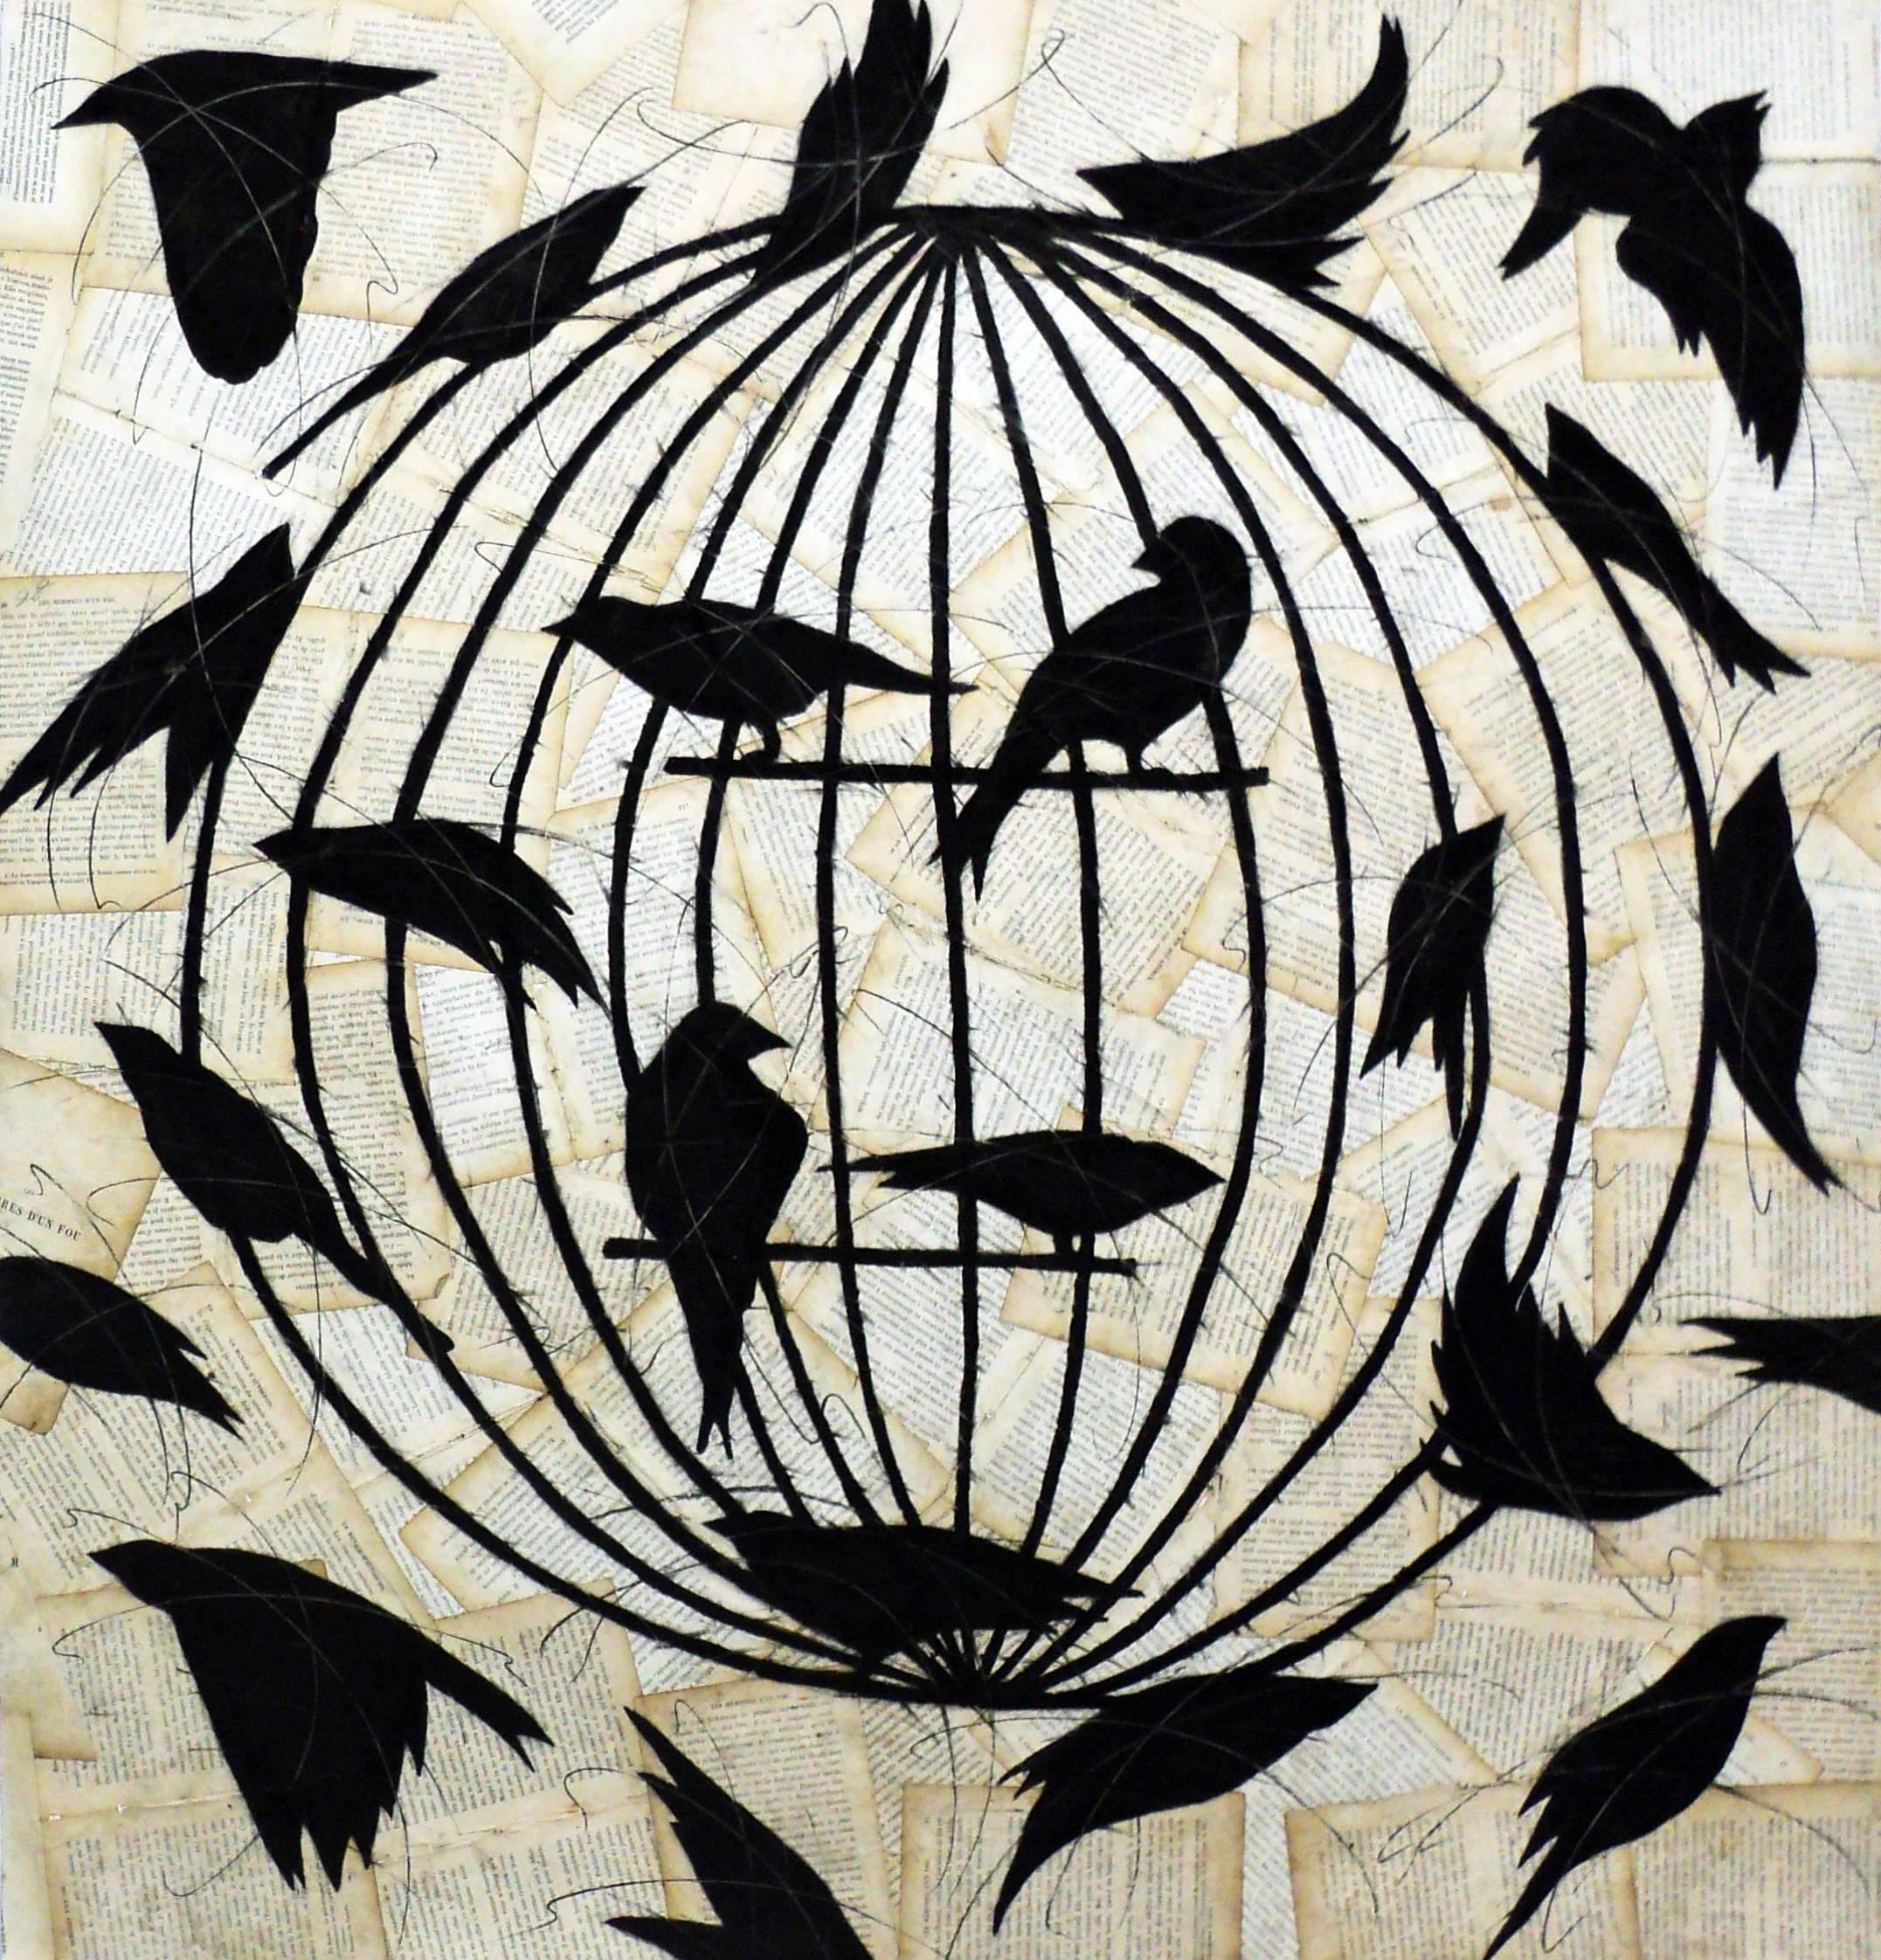 Louise Laplante Animal Art - La Cage d'un Fou (Figurative Chalk Drawing of Black Birds on Vintage Book Pages)